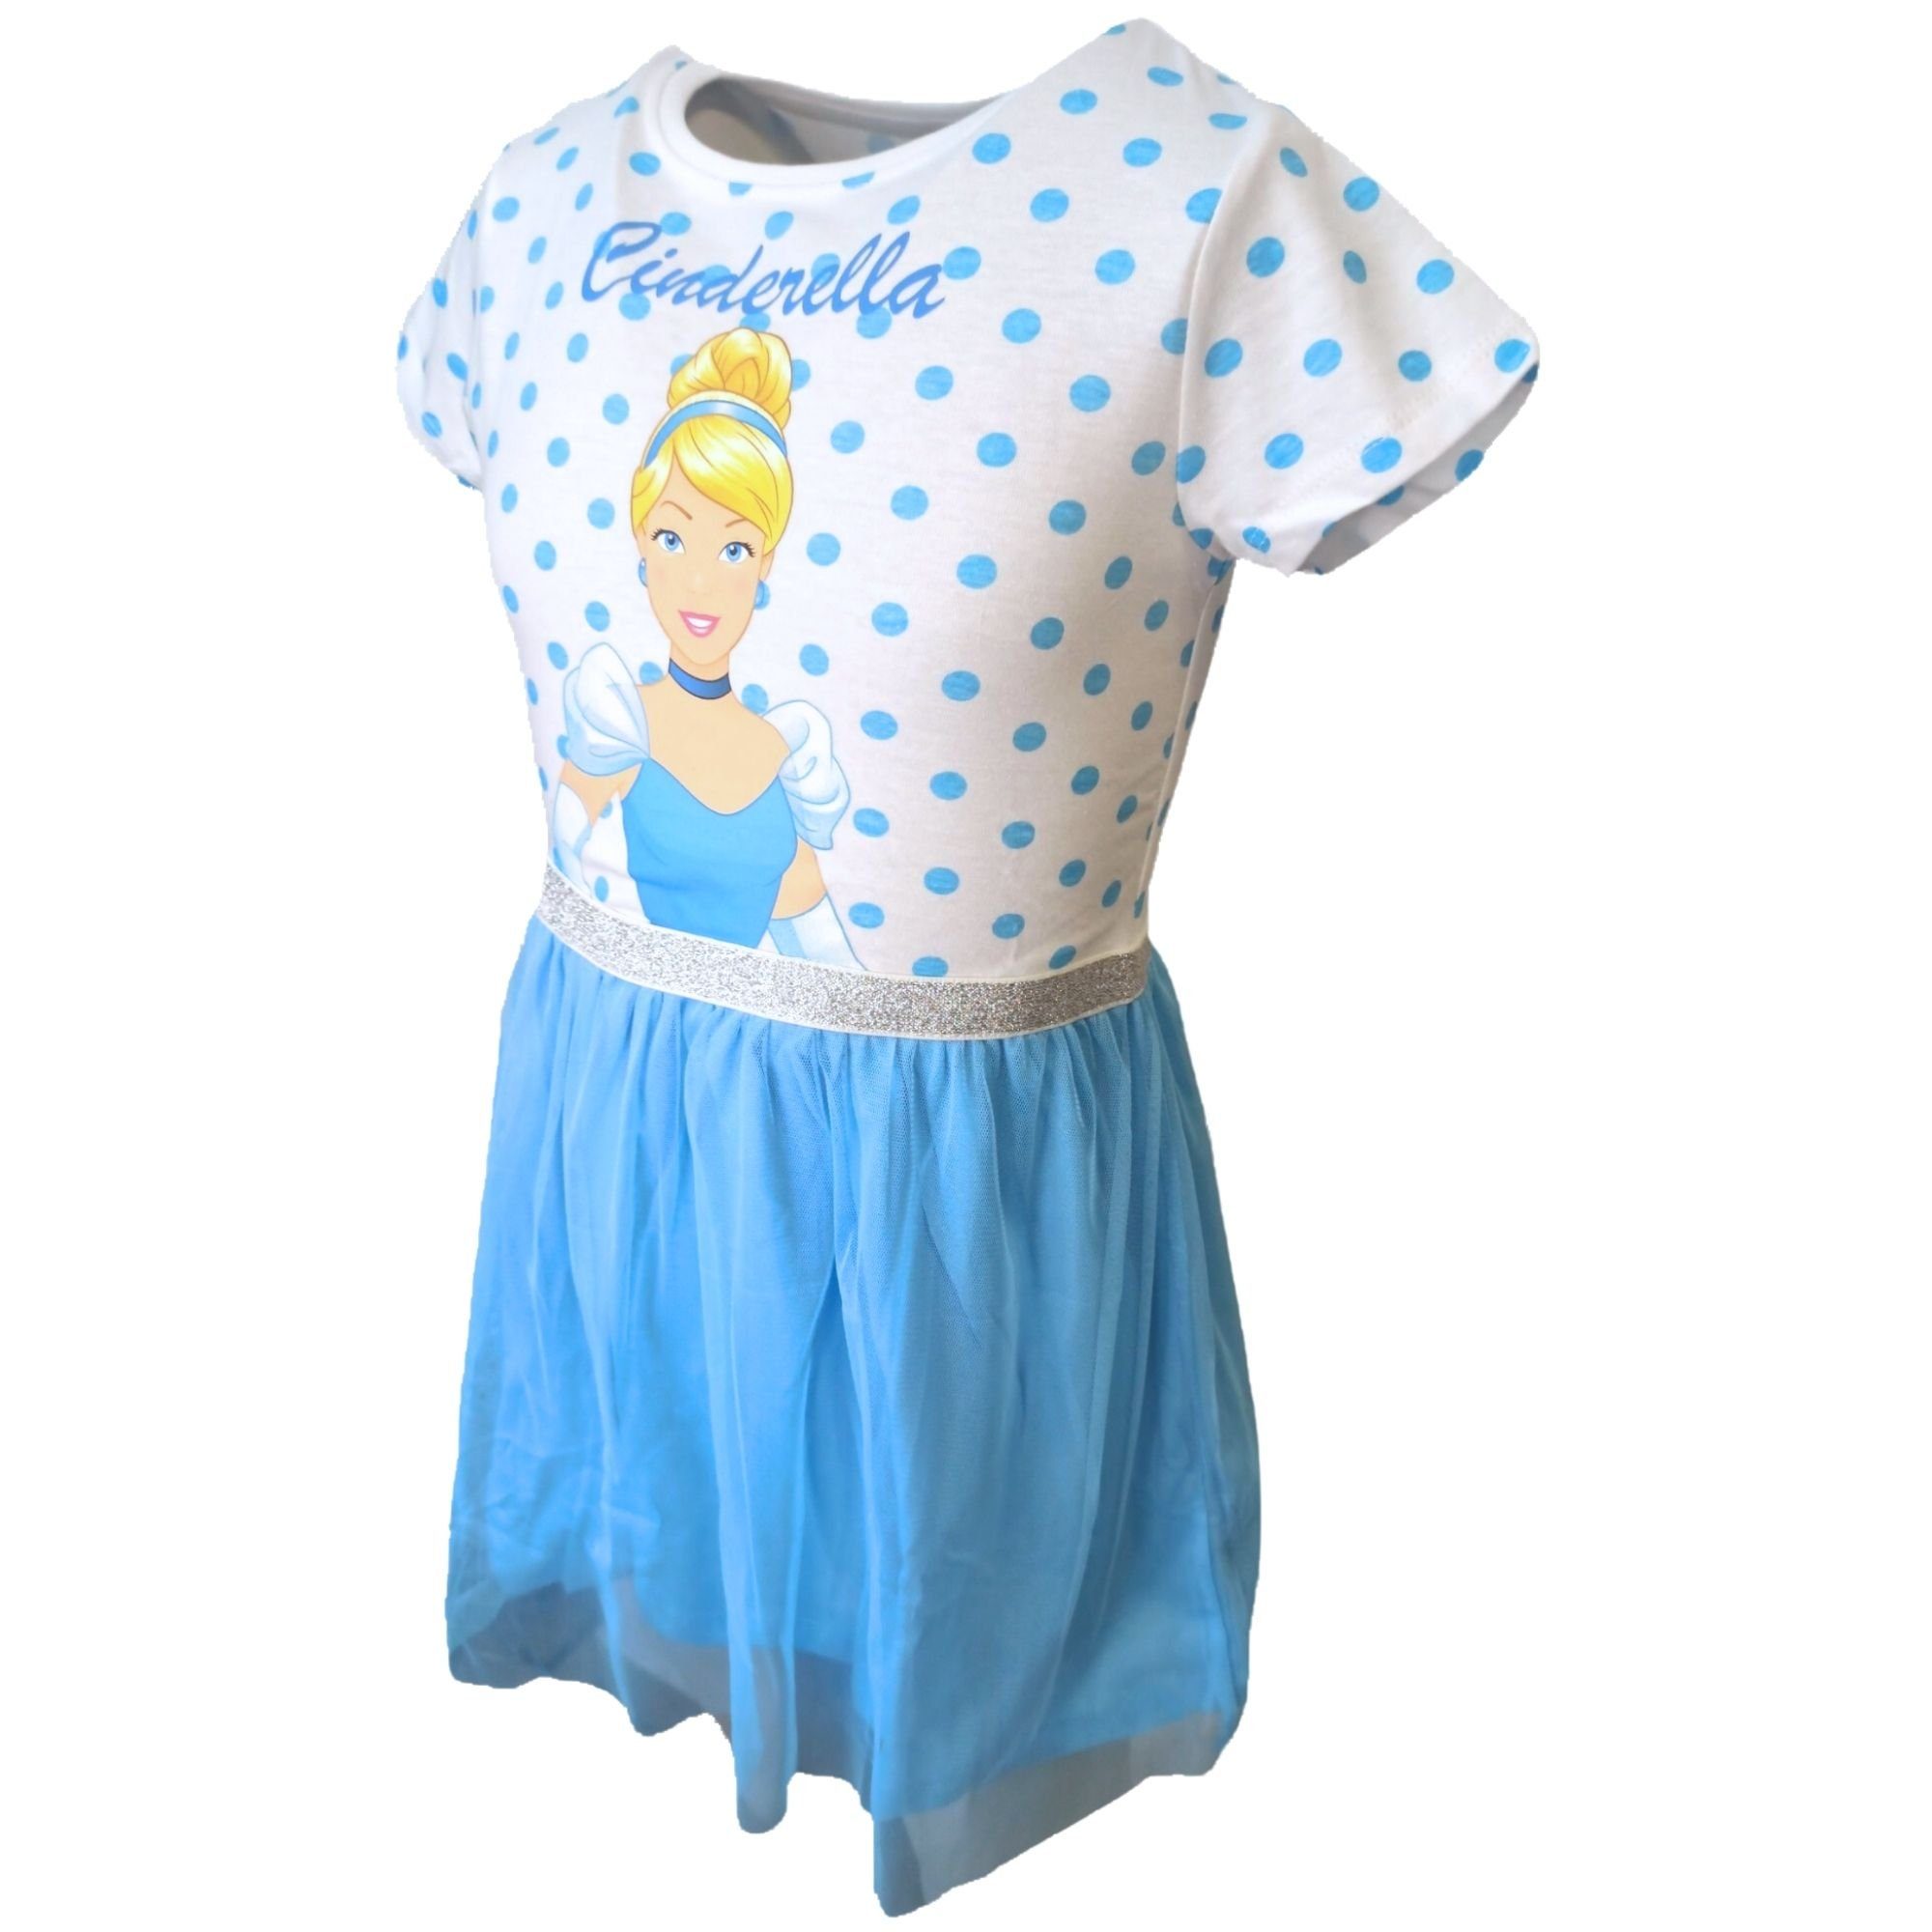 Disney Princess Sommerkleid Cinderella Tüllkleid mit Glitzerdetails Gr. 104  -134 cm